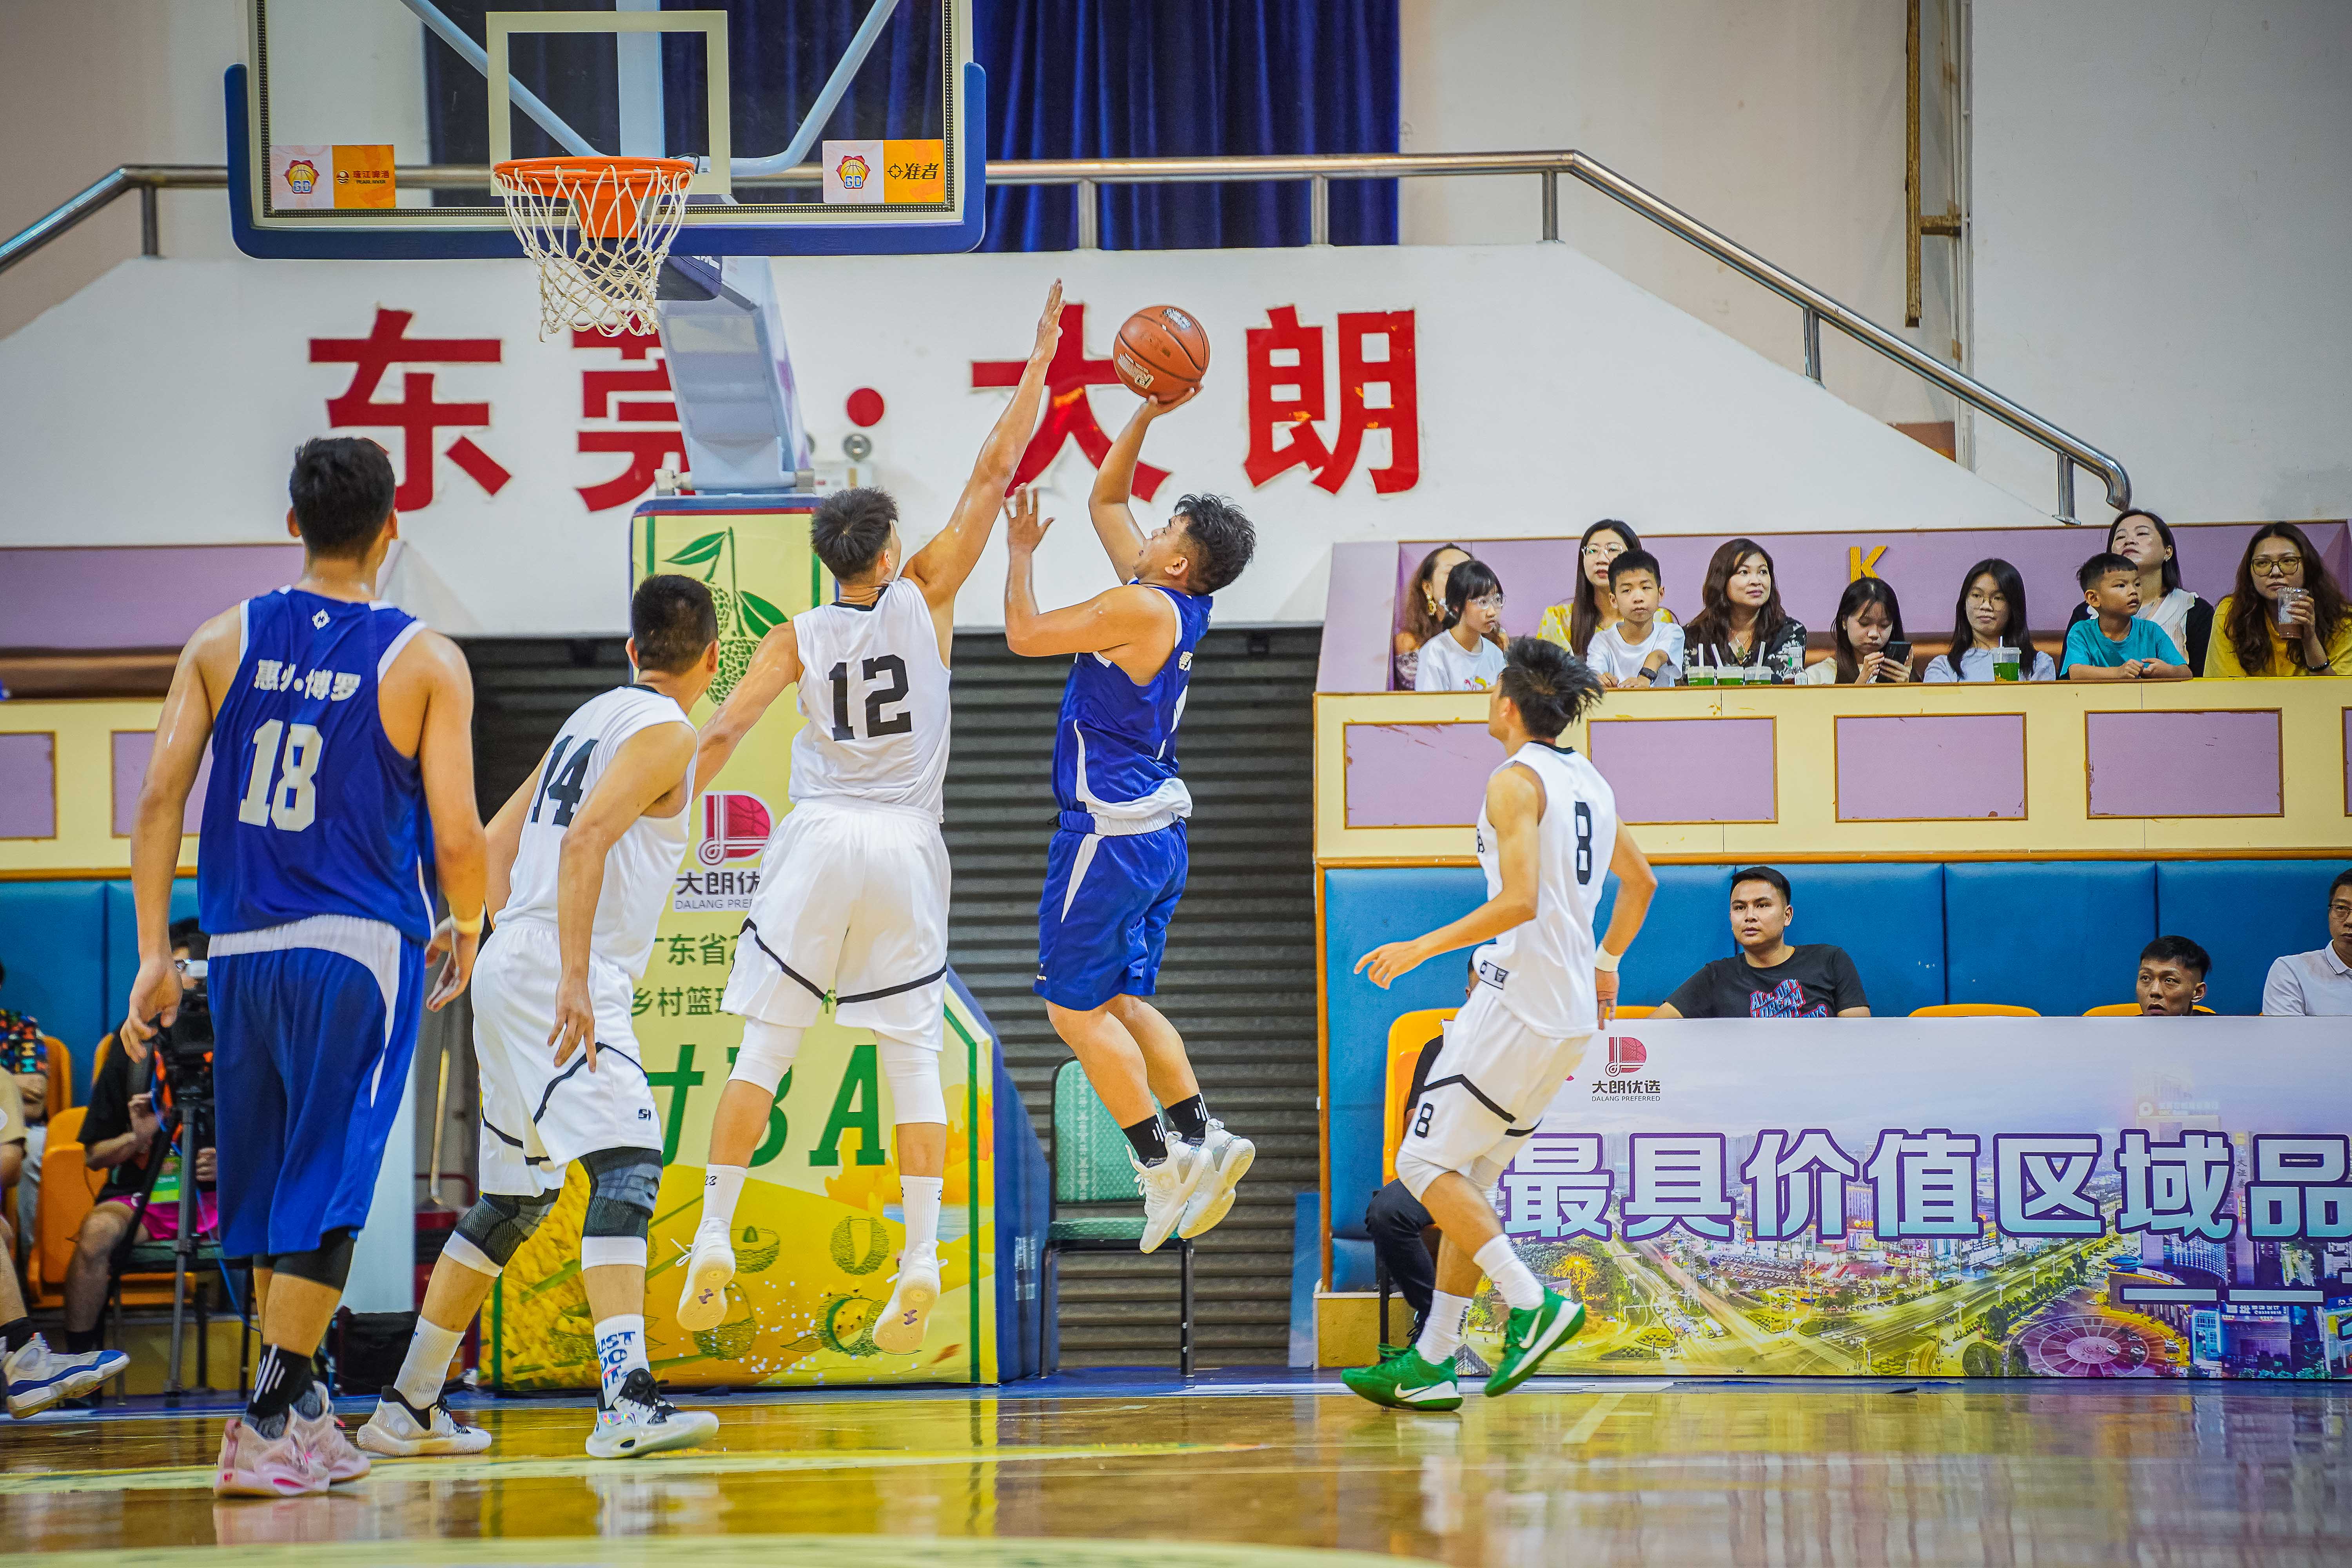 籃球運動在廣東具有深厚基礎。廣東省籃球協會供圖